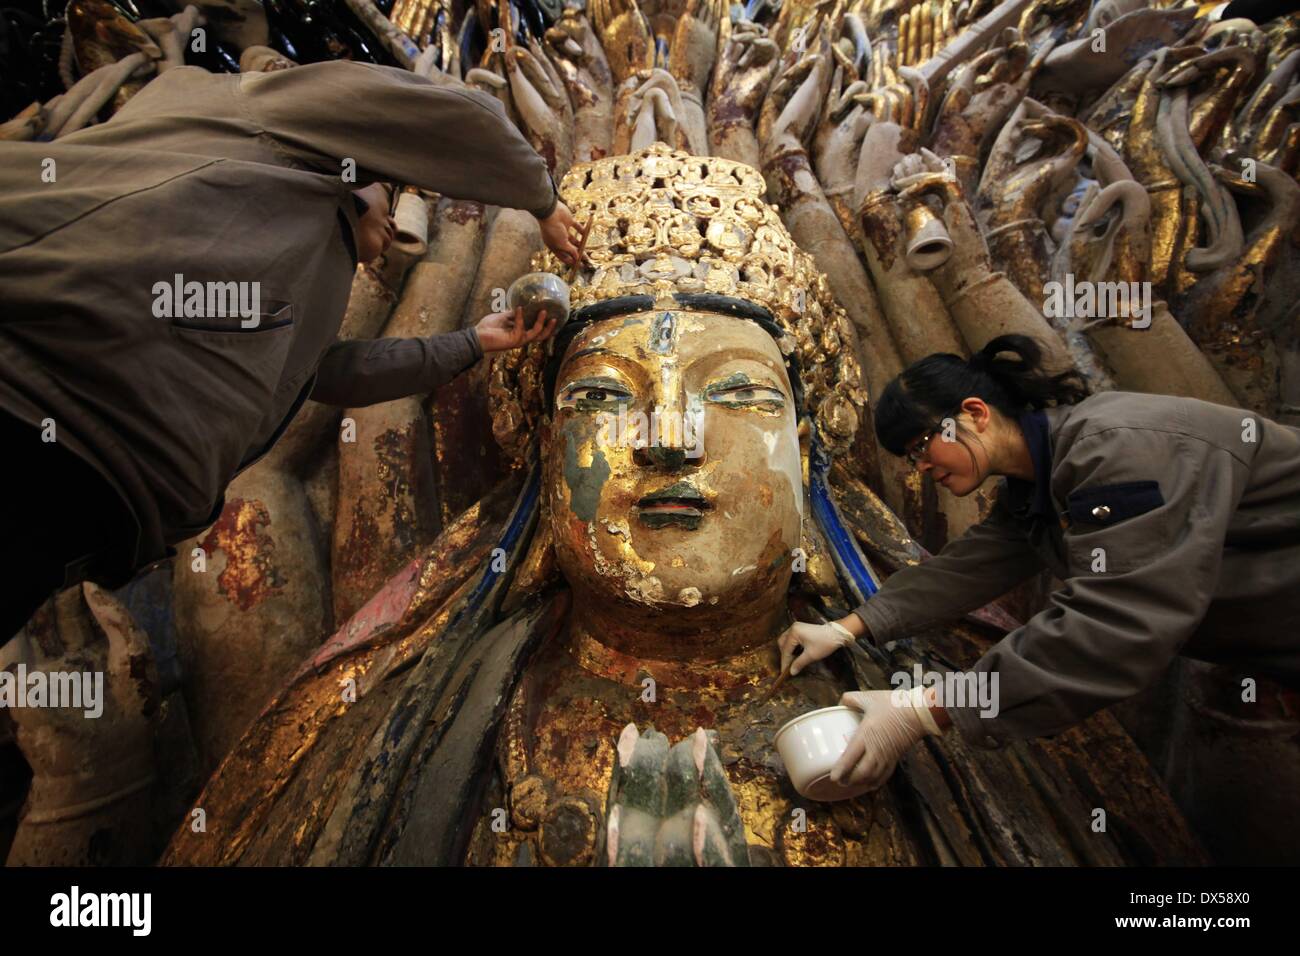 (140318)--CHONGQING, 18. März 2014 (Xinhua)--Personal Mitglieder klar gold Folie von der Skulptur der Qianshou Guanyin (Bodhisattva mit tausend Händen) auf Mount Baoding im Bezirk Dazu in der Gemeinde von Chongqing, Südwest-China, 18. März 2014 peeling. Die Skulptur geschnitzt in der Höhle mit 7,7 Meter hoch und 12,5 Meter breit, könnte südlichen Song-Dynastie (1127 bis 1279) stammen. Im Laufe der Jahrhunderte die Skulptur Farbe ist verblasst, Teile der Goldfolie Verkleidung haben abgeschält und Risse aufgetreten. Und somit ein Restaurierungsprojekt für die buddhistische Statue wurde gestartet Stockfoto